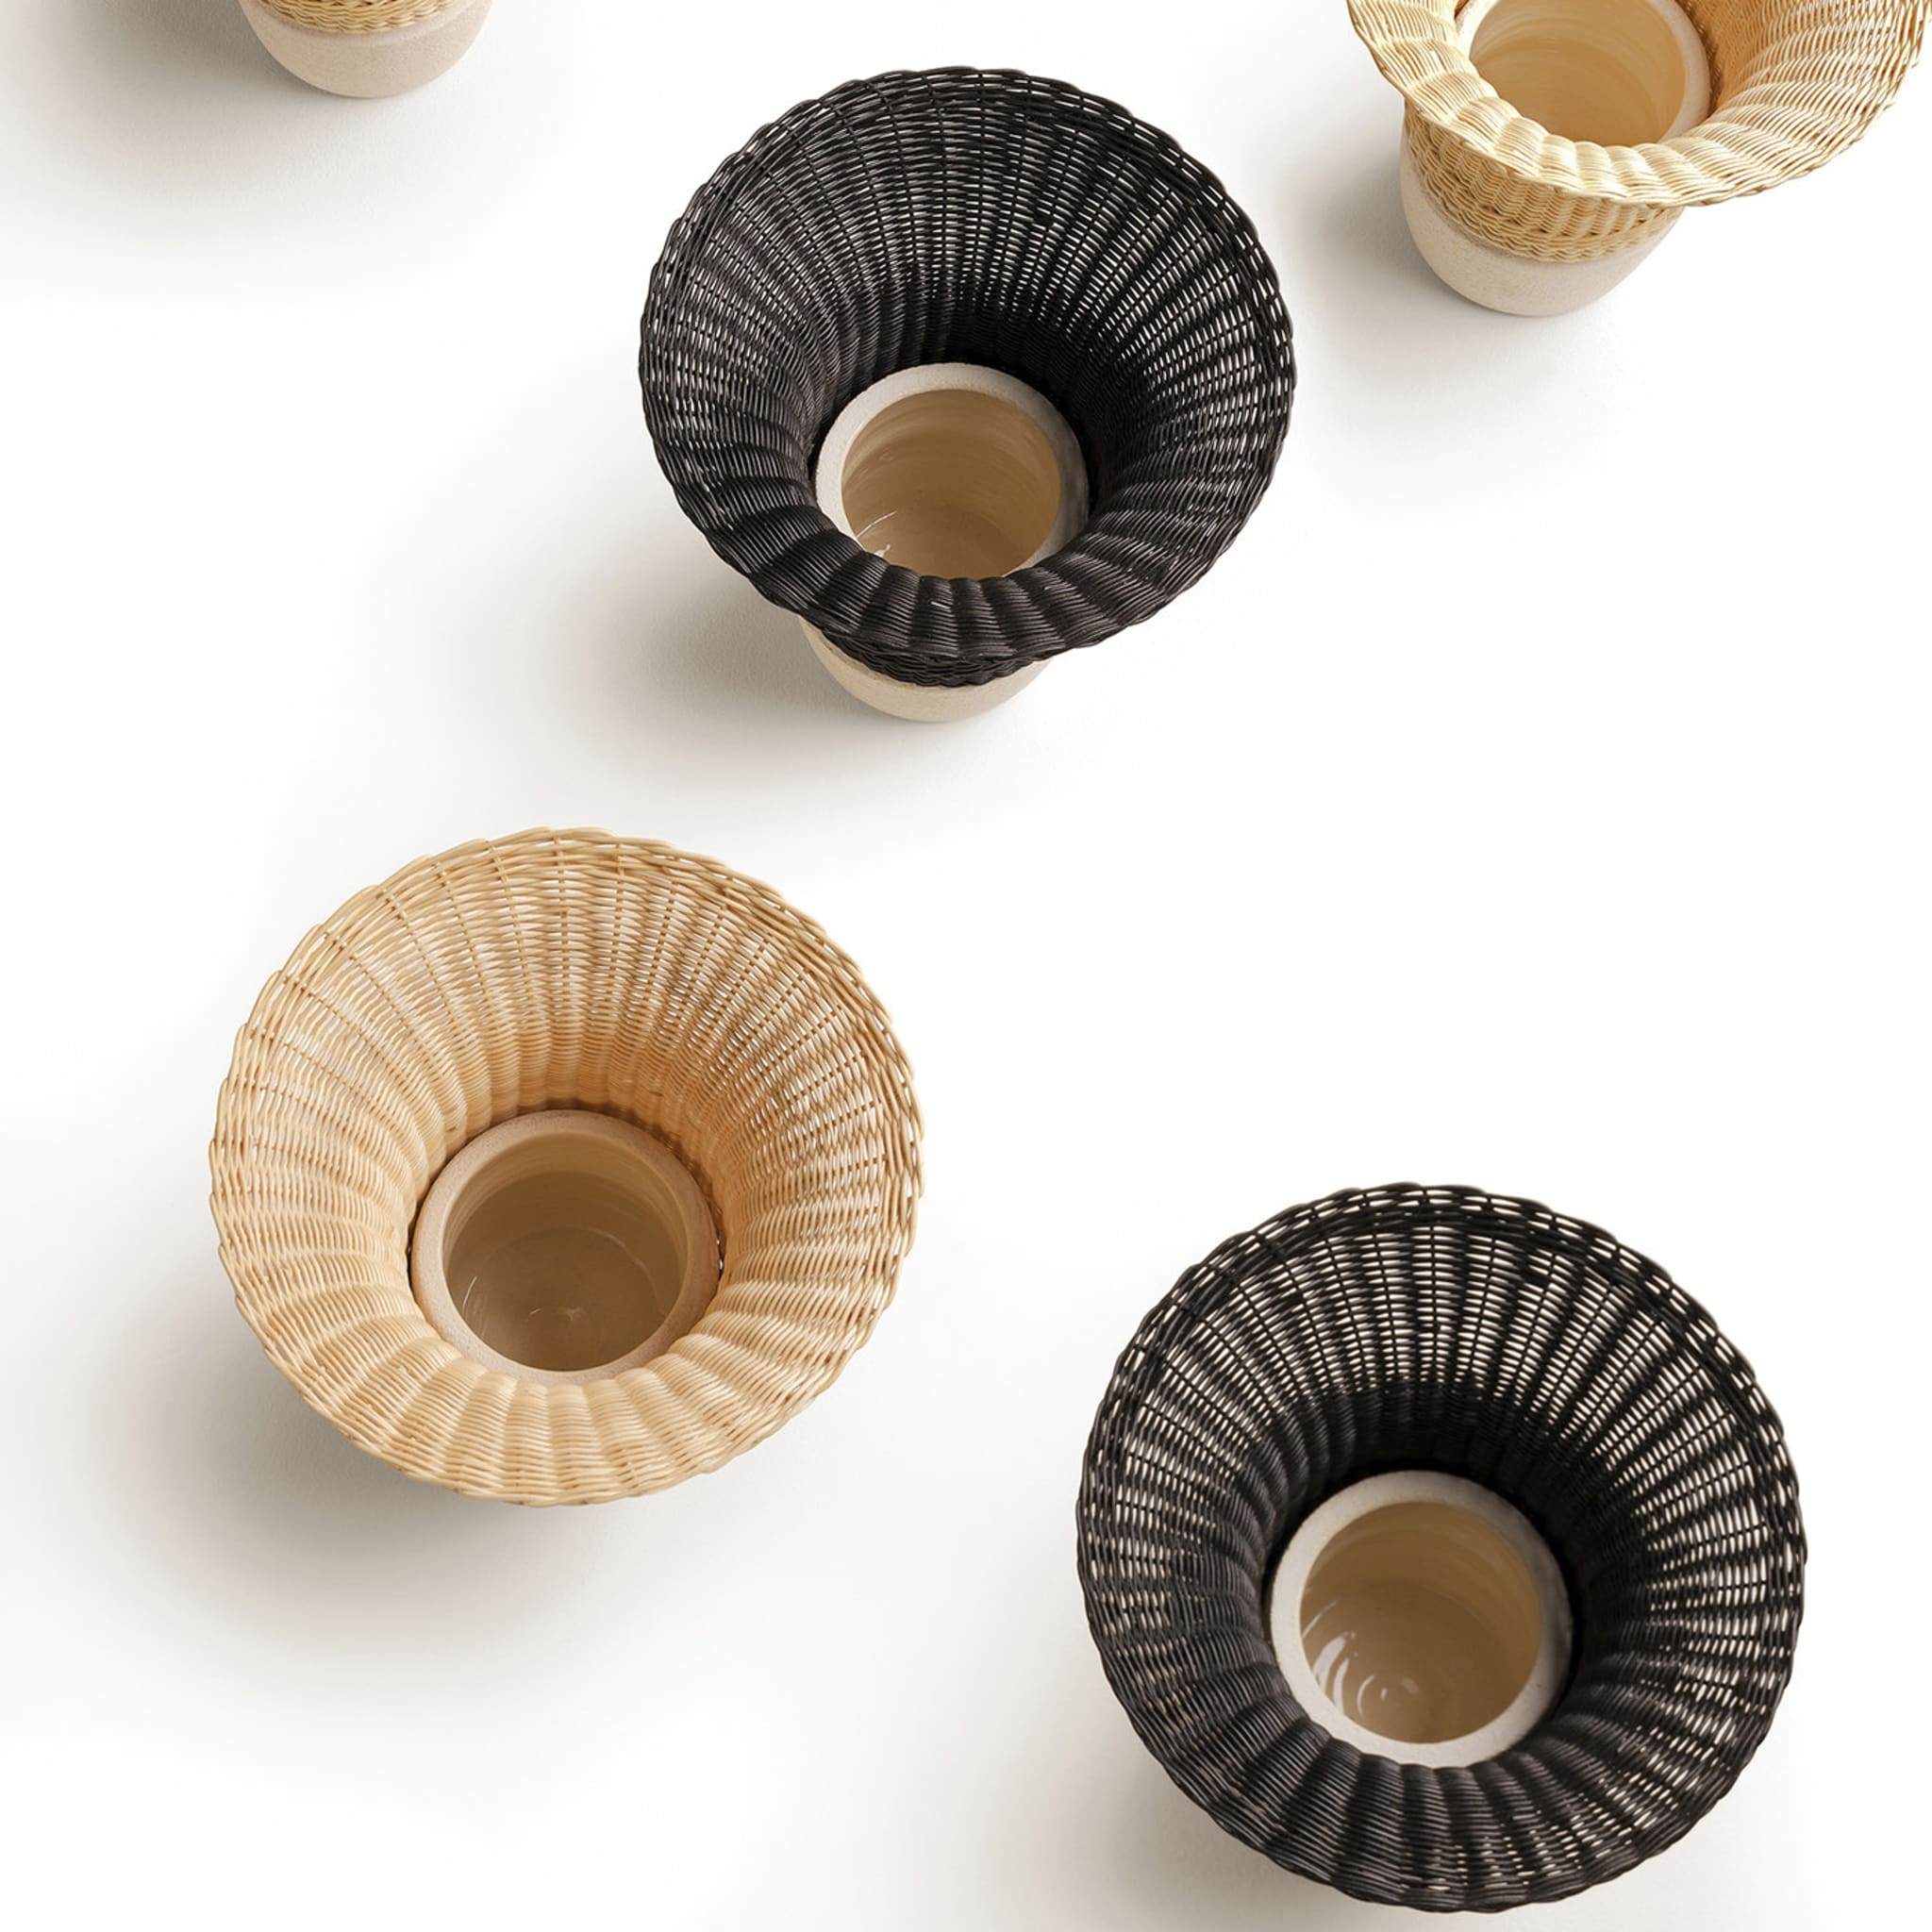 Nodo Wicker Black Vase by Intreccio Lab - Alternative view 1